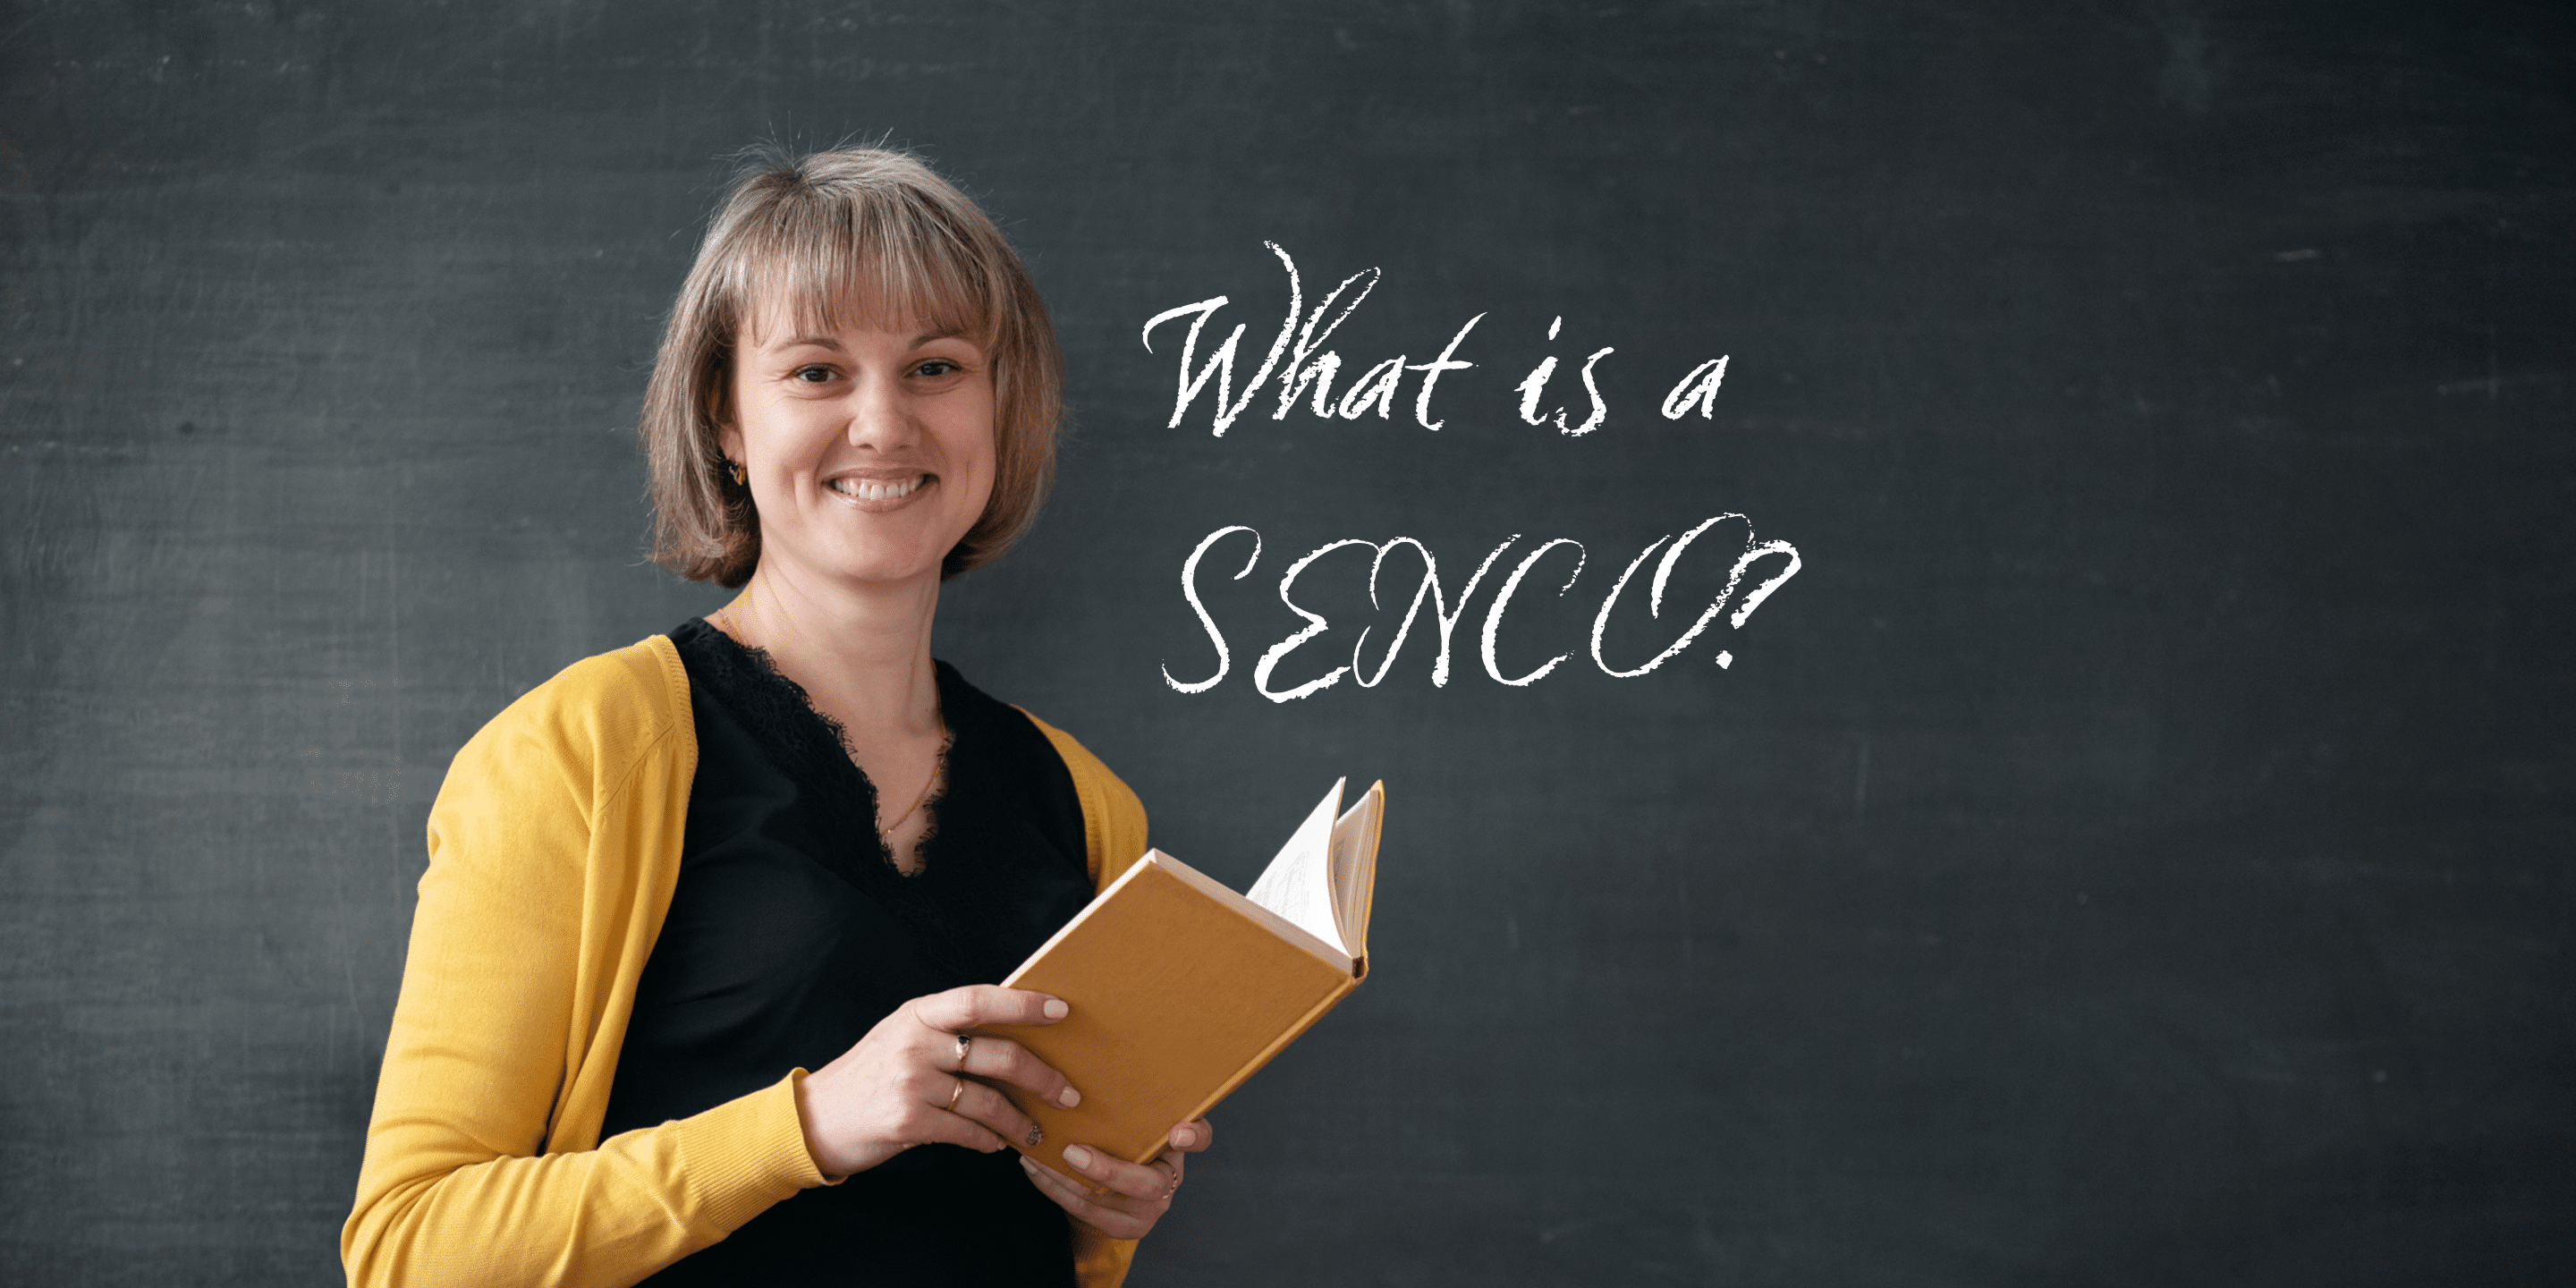 What is a SENCO? Teacher standing near blackboard